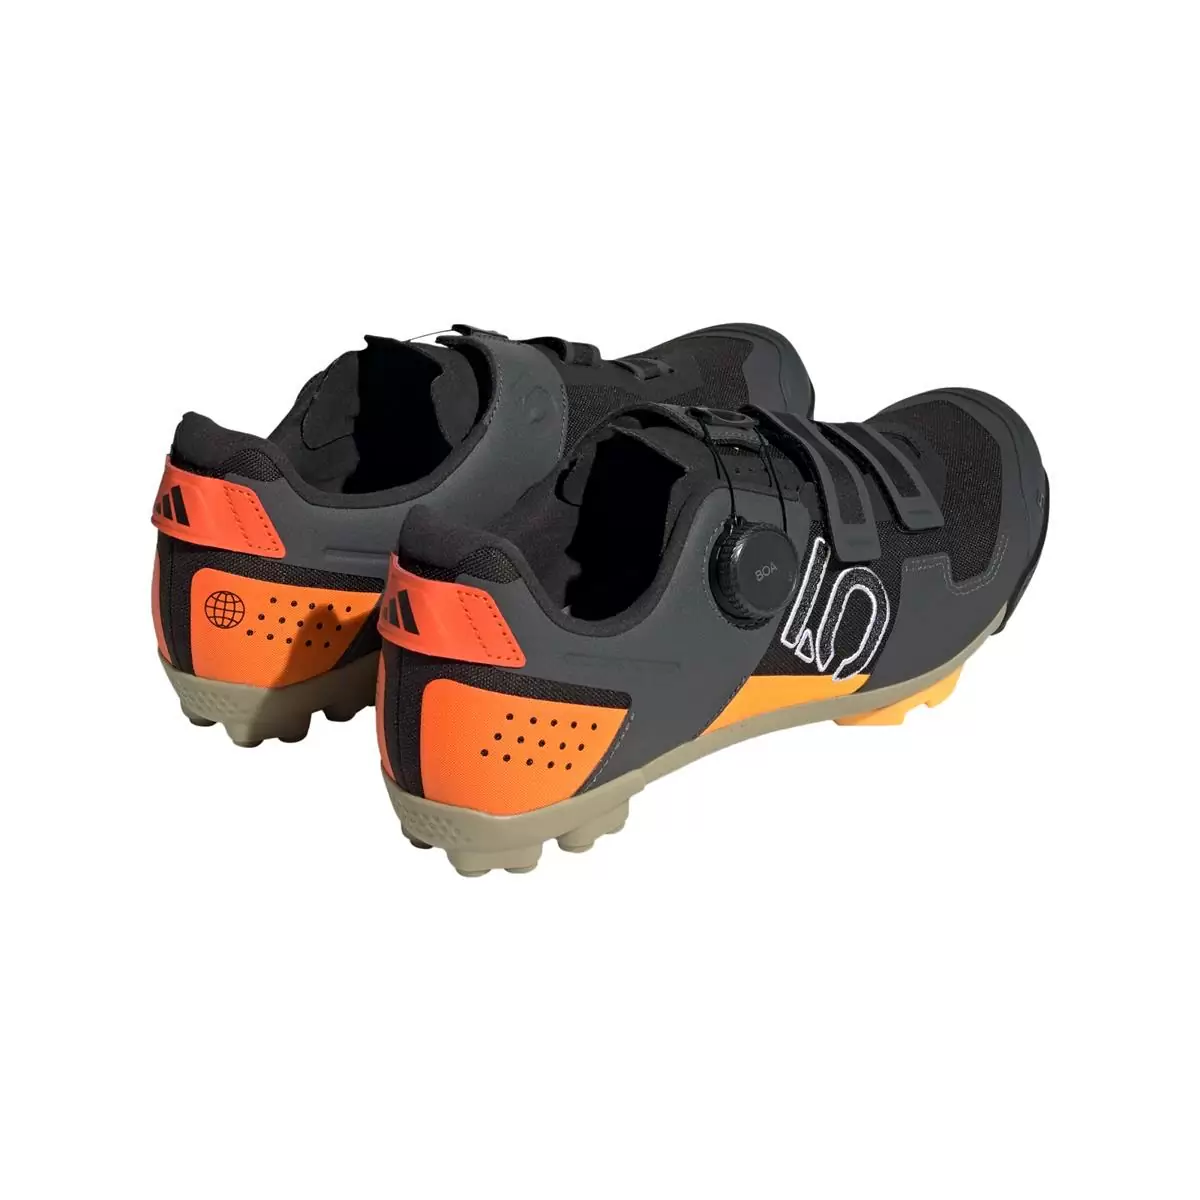 Clip 5.10 Kestrel Boa MTB-Schuhe Schwarz/Orange Größe 42.5 #4